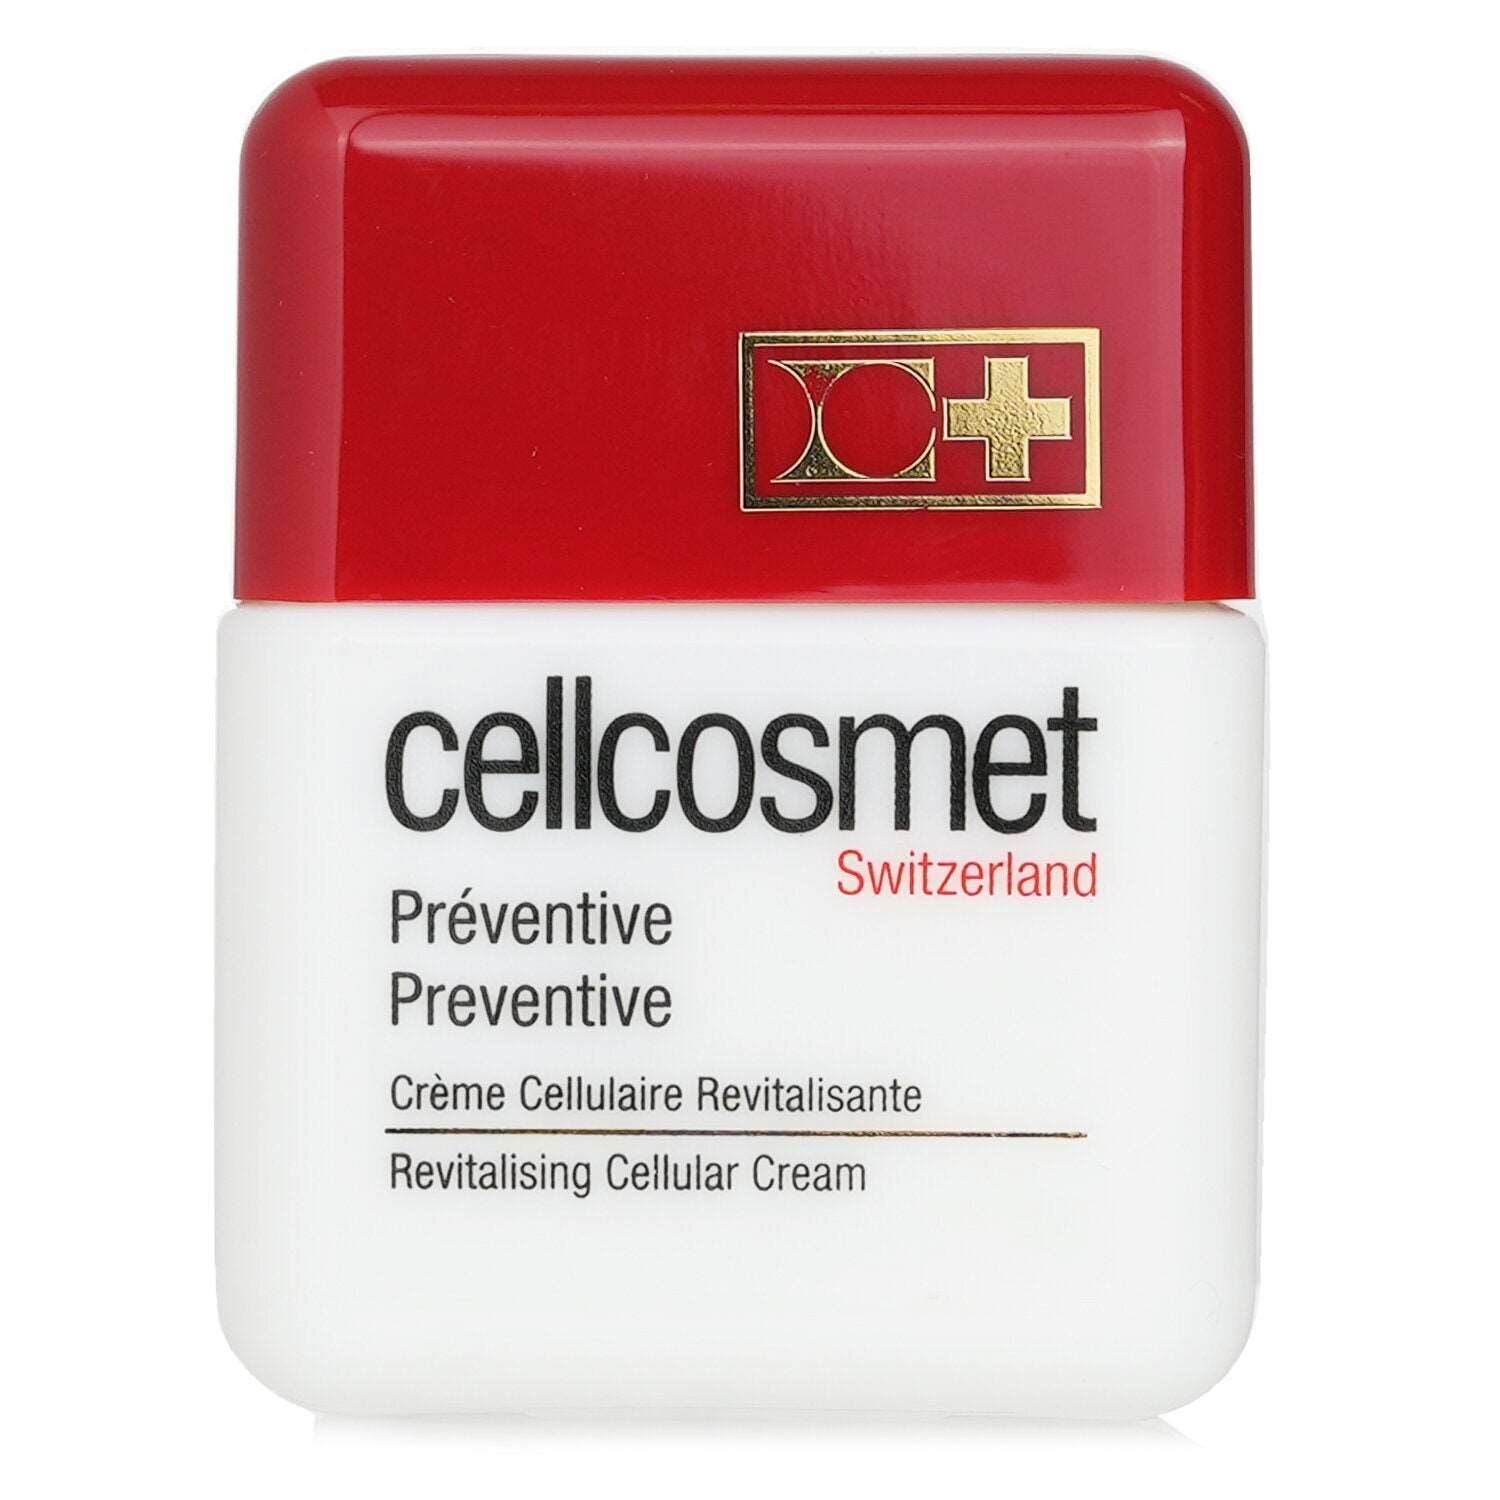 CELLCOSMET & CELLMEN - Cellcosmet Preventive Revitalising Cellular Cream - 50ml/1.76oz 3P's Inclusive Beauty